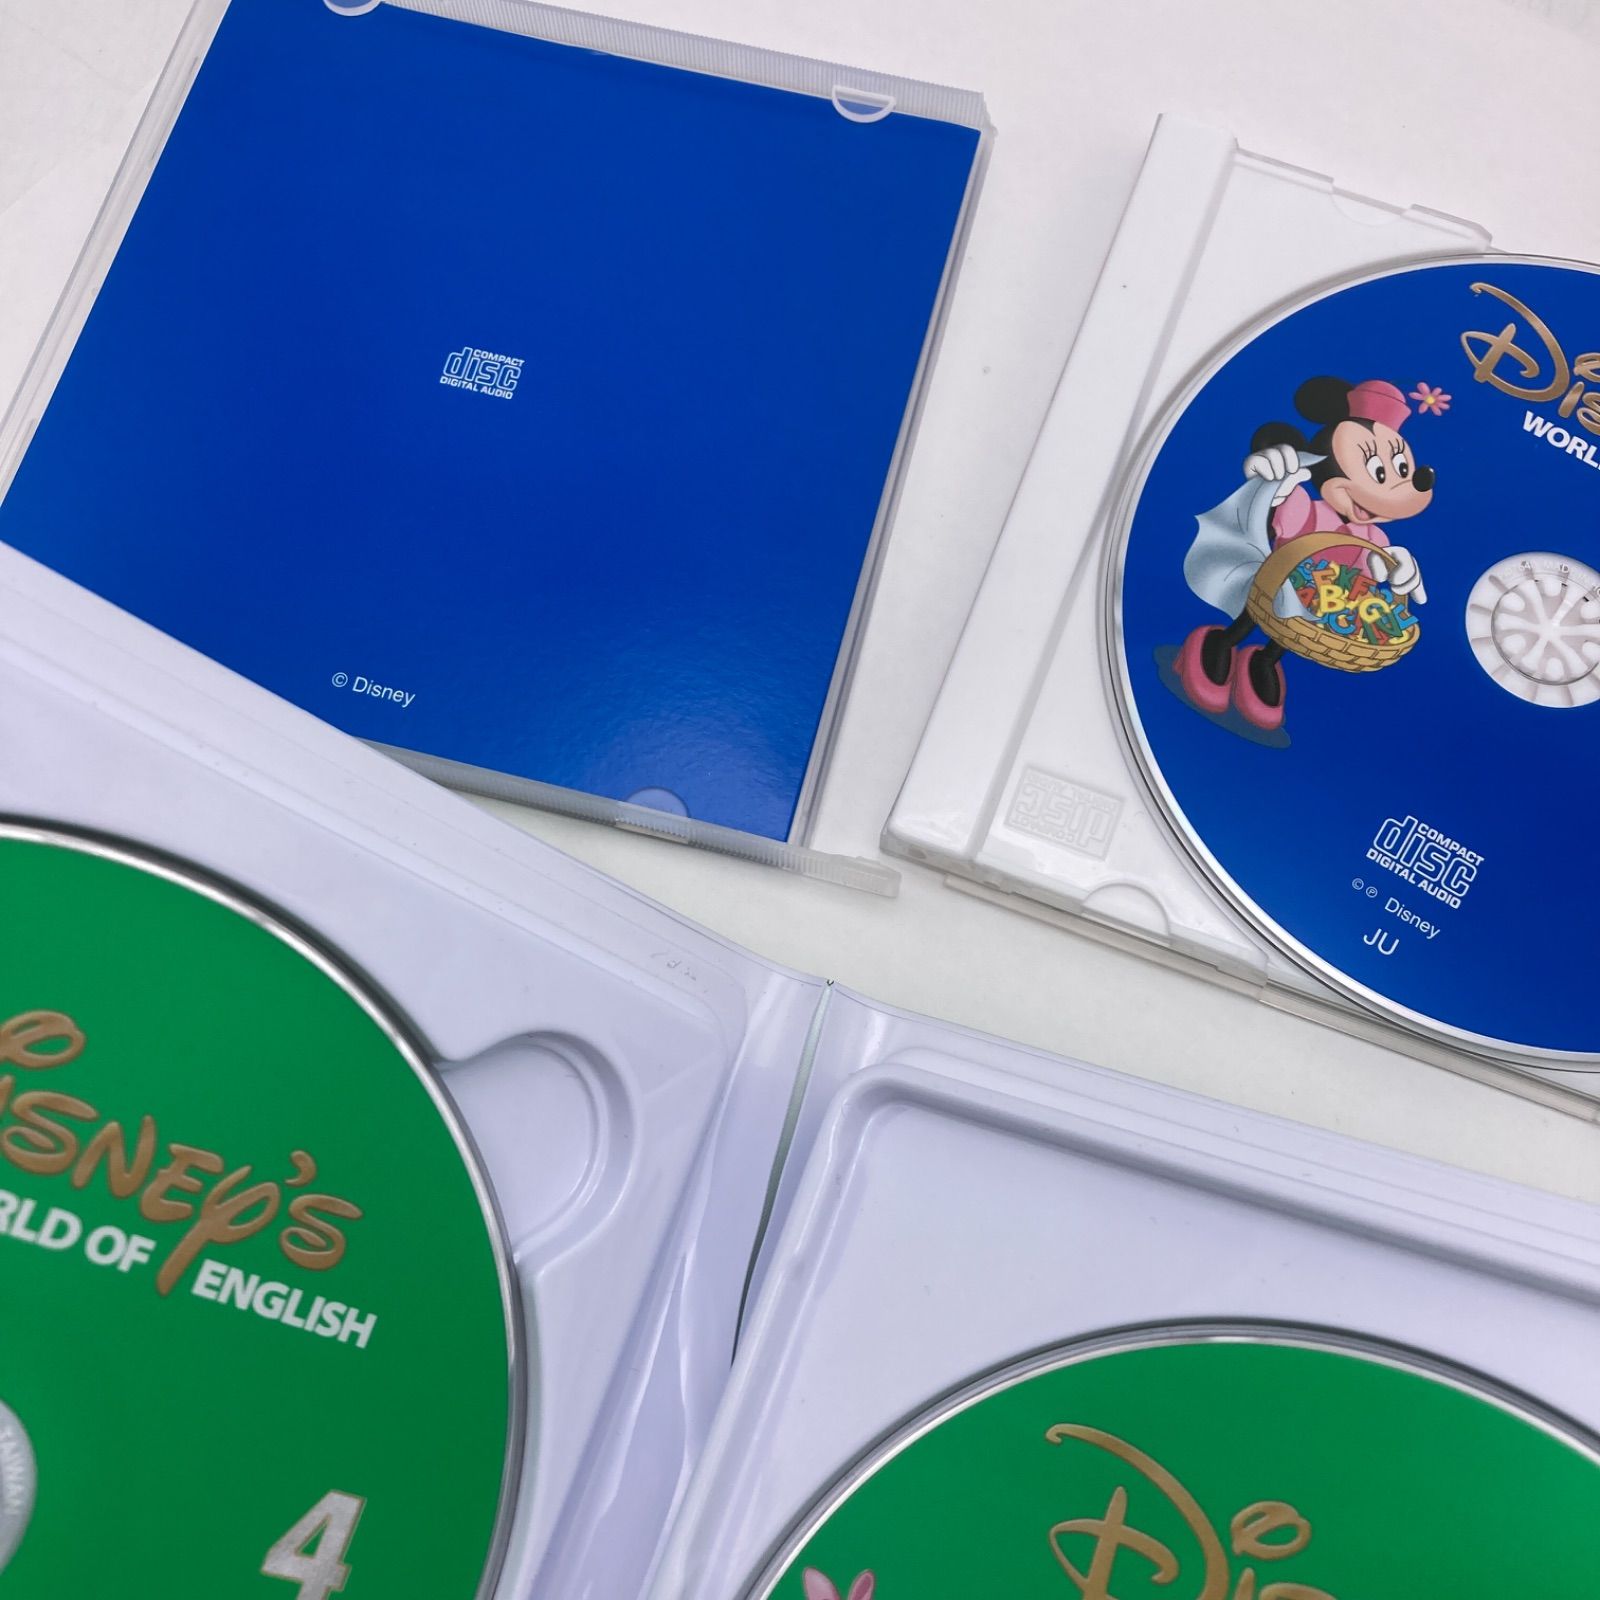 2017年購入 メインプログラムセット 絵本 CD DVD24枚 新子役 字幕あり ディズニー英語システム DWE Disney ワールドファミリー  中古 500621 - メルカリ